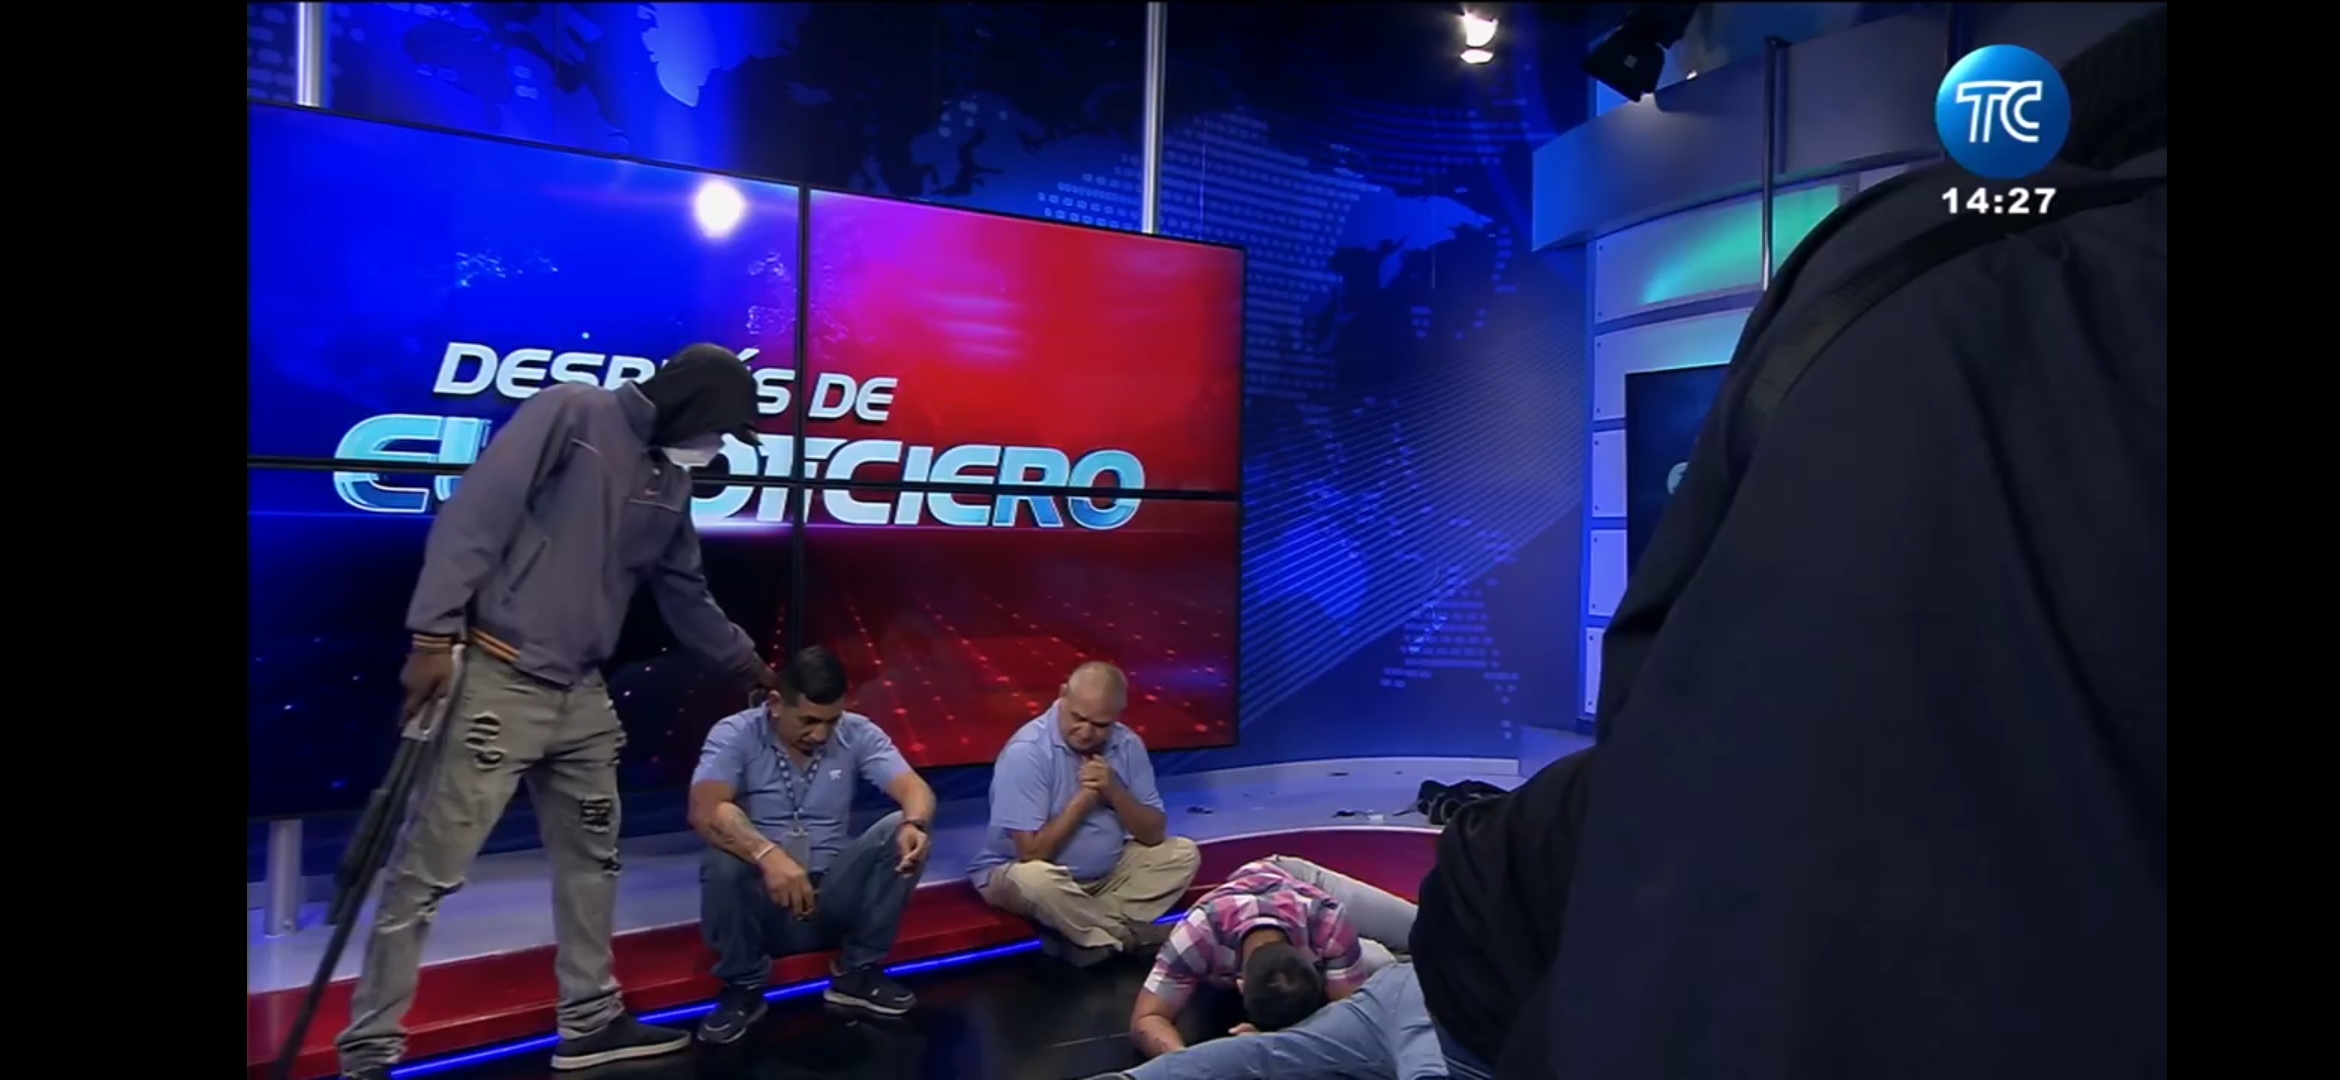 Un grupo armado ingresó este martes en el canal de televisión TC, en Guayaquil, Ecuador y sometió su personal durante una transmisión en vivo. (Foto Prensa Libre: EFE/ Captura de transmisión)